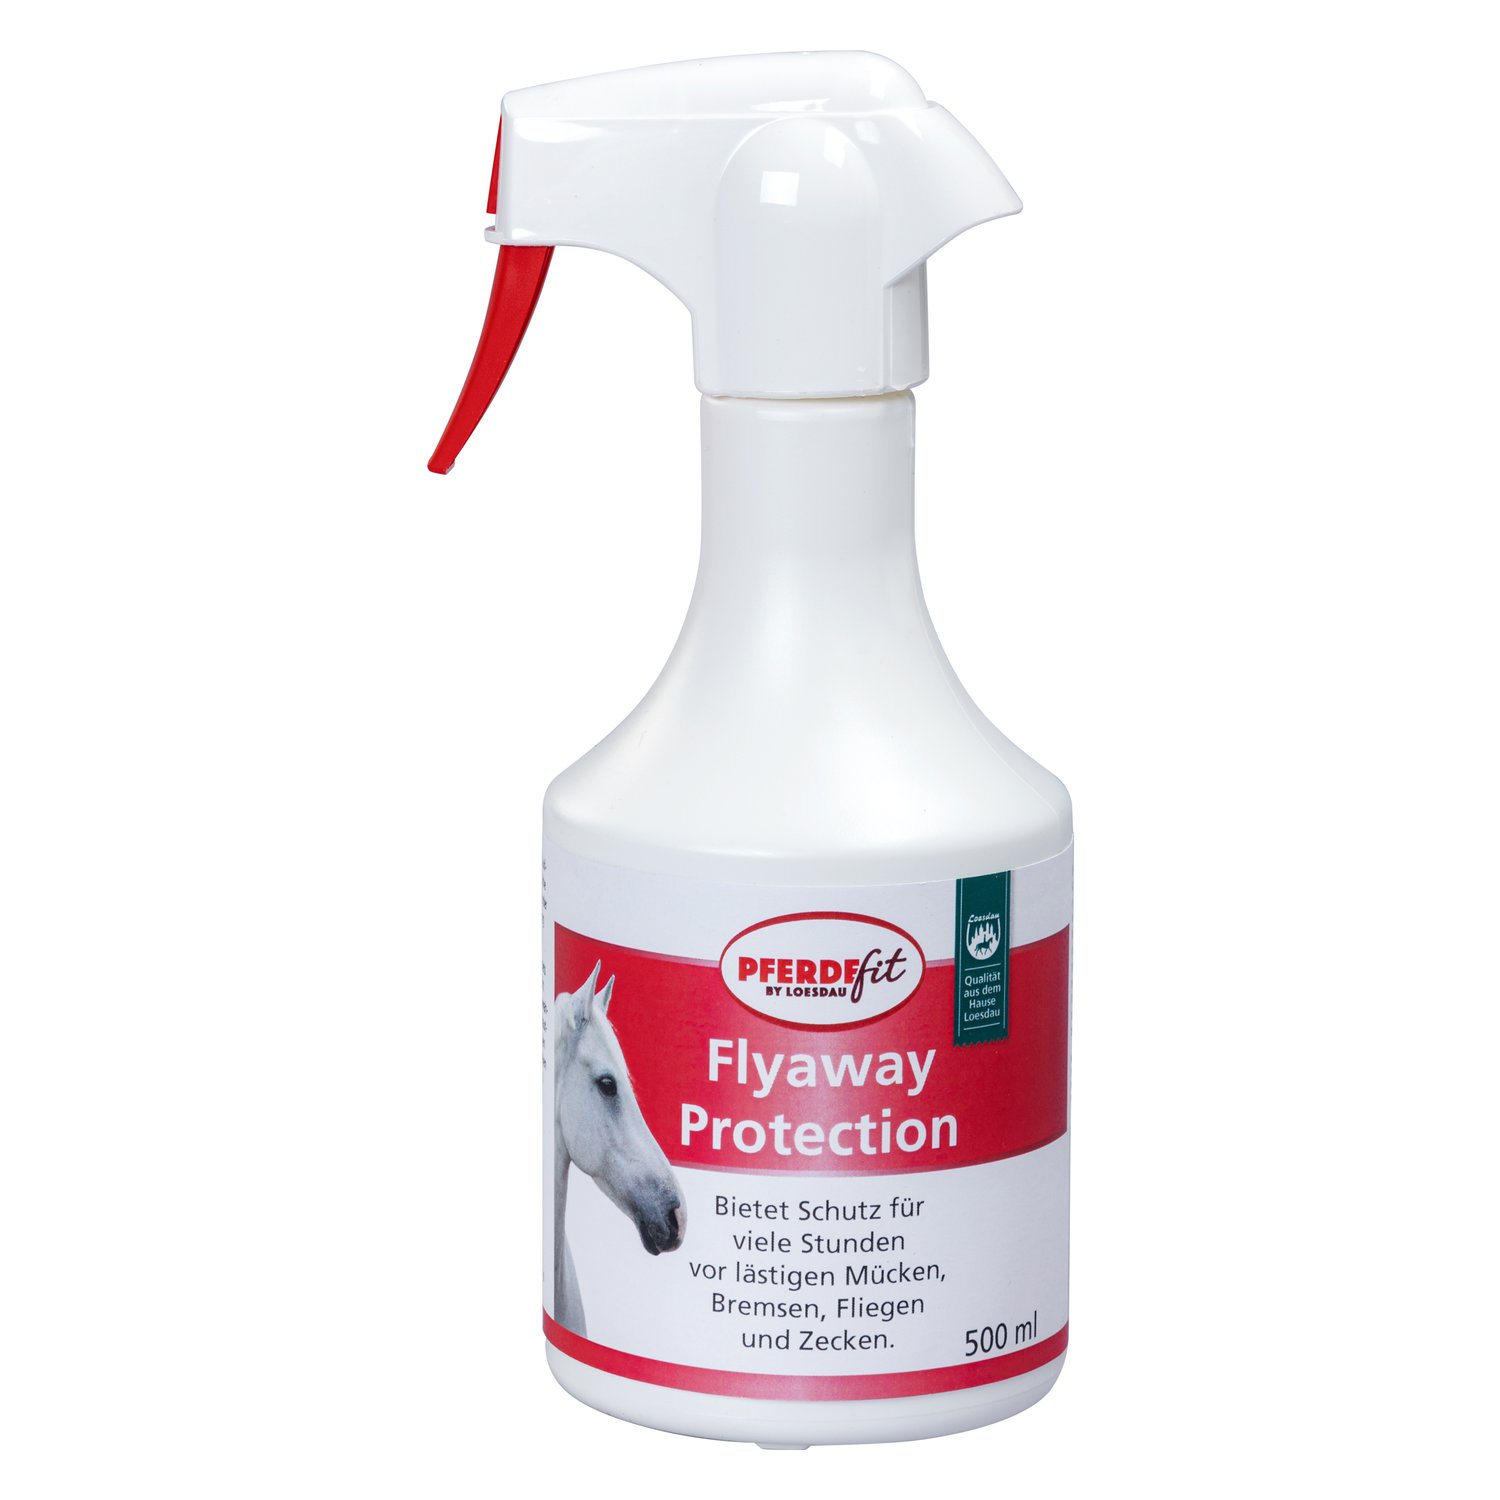 PFERDEfit by Loesdau Flyaway Protection 500 ml